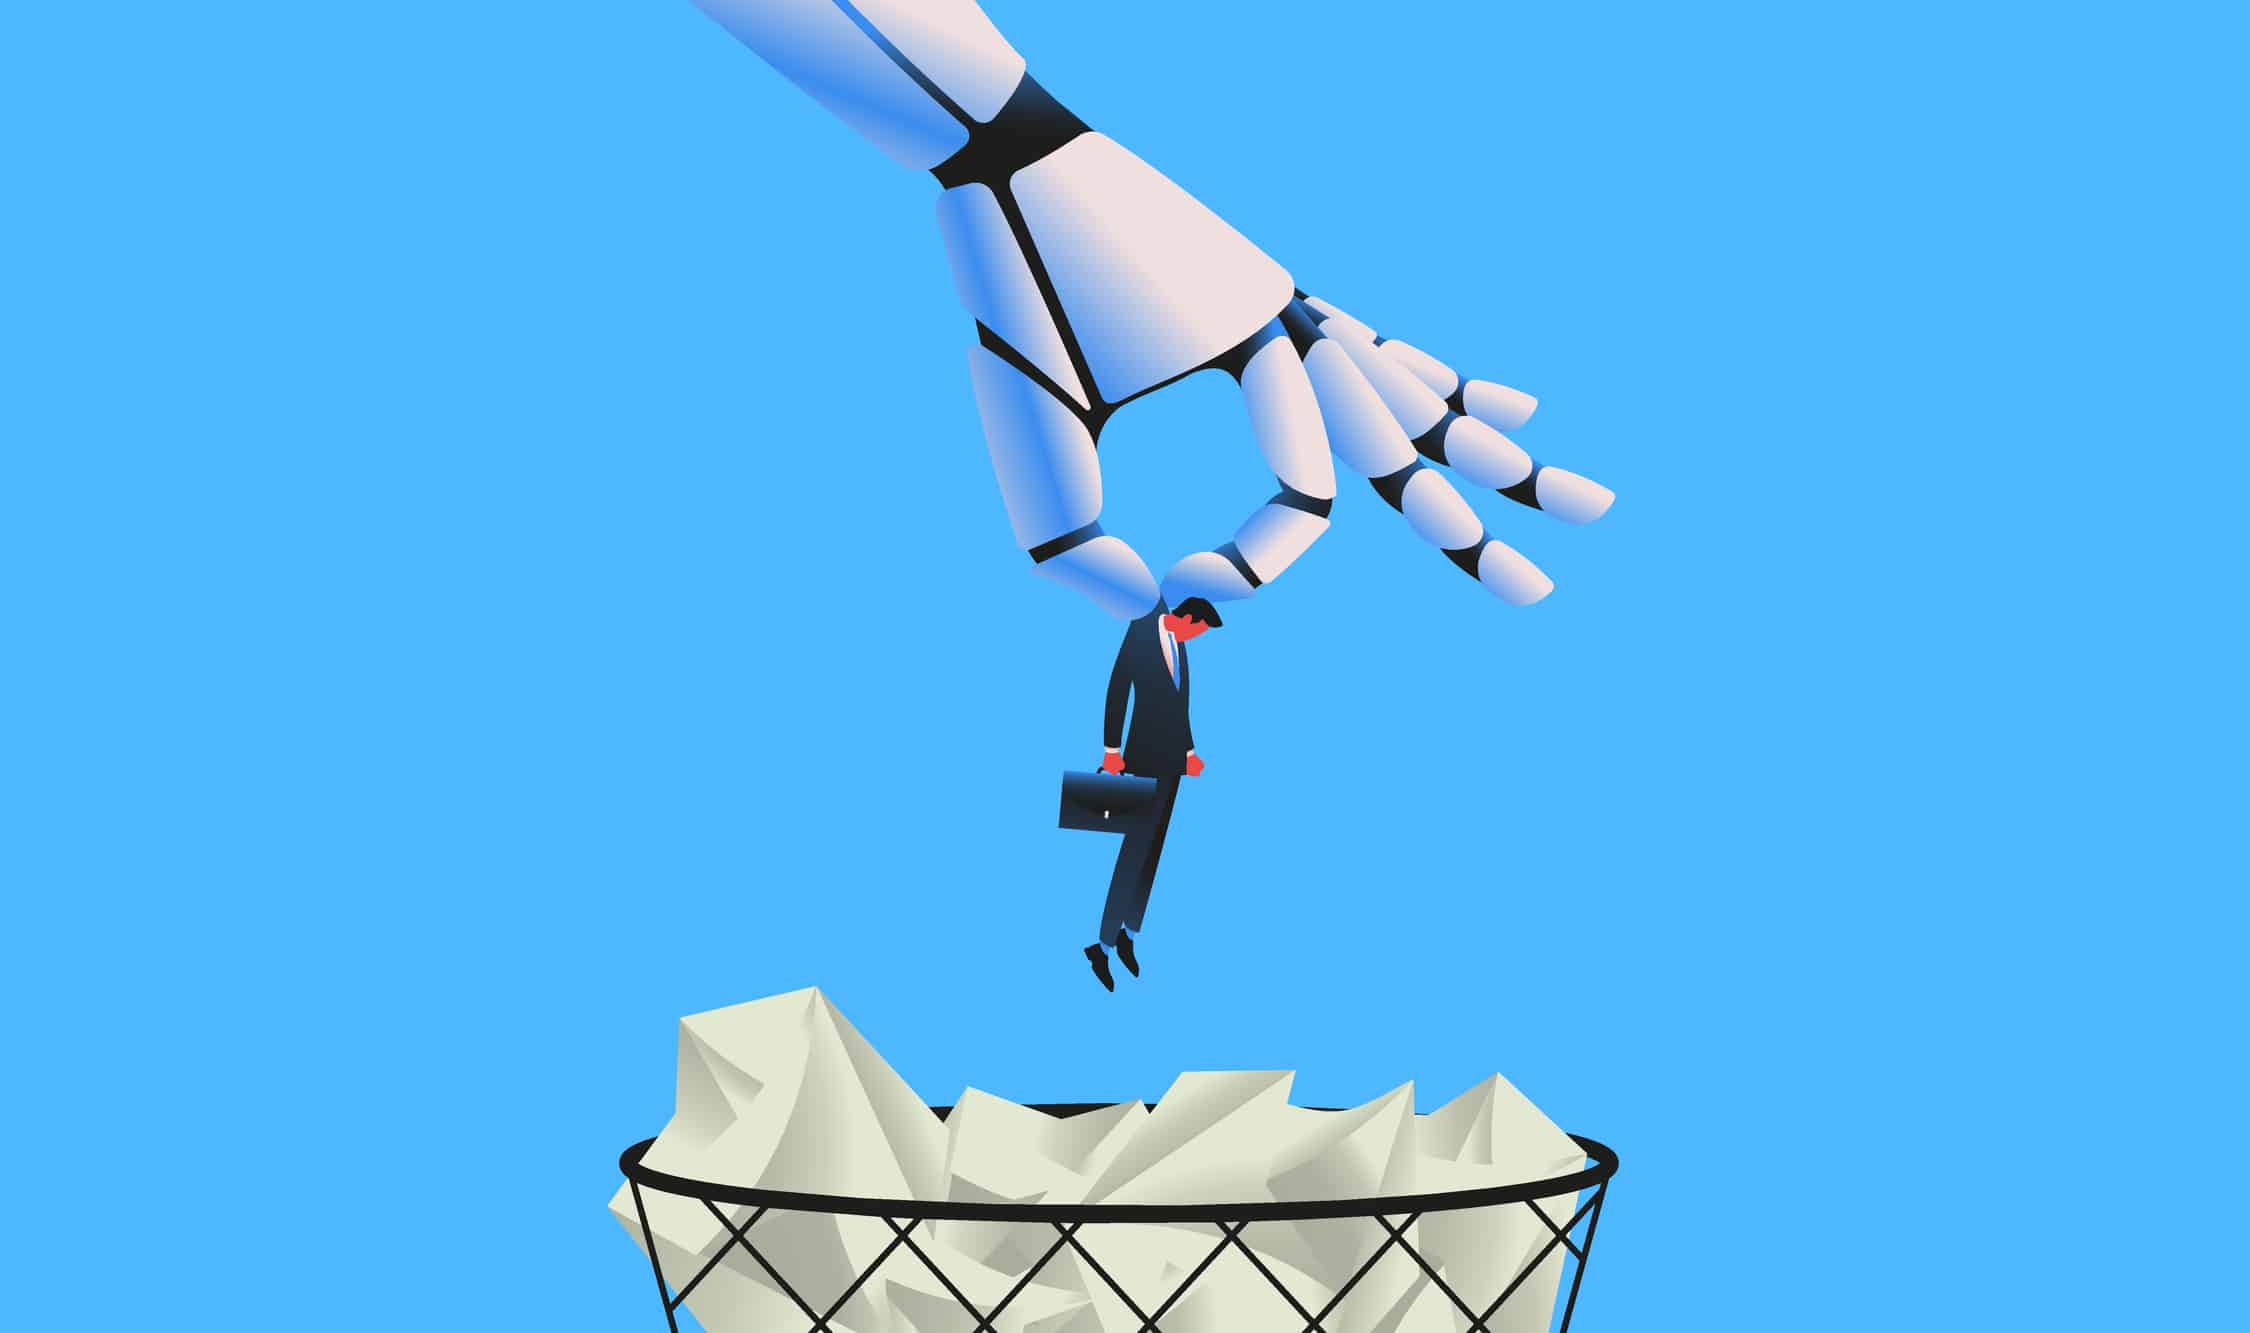 Großer Roboter der Mann in Papierkorb wirft als Metapher für "Wird uns KI am Arbeitsplatz ersetzen?"